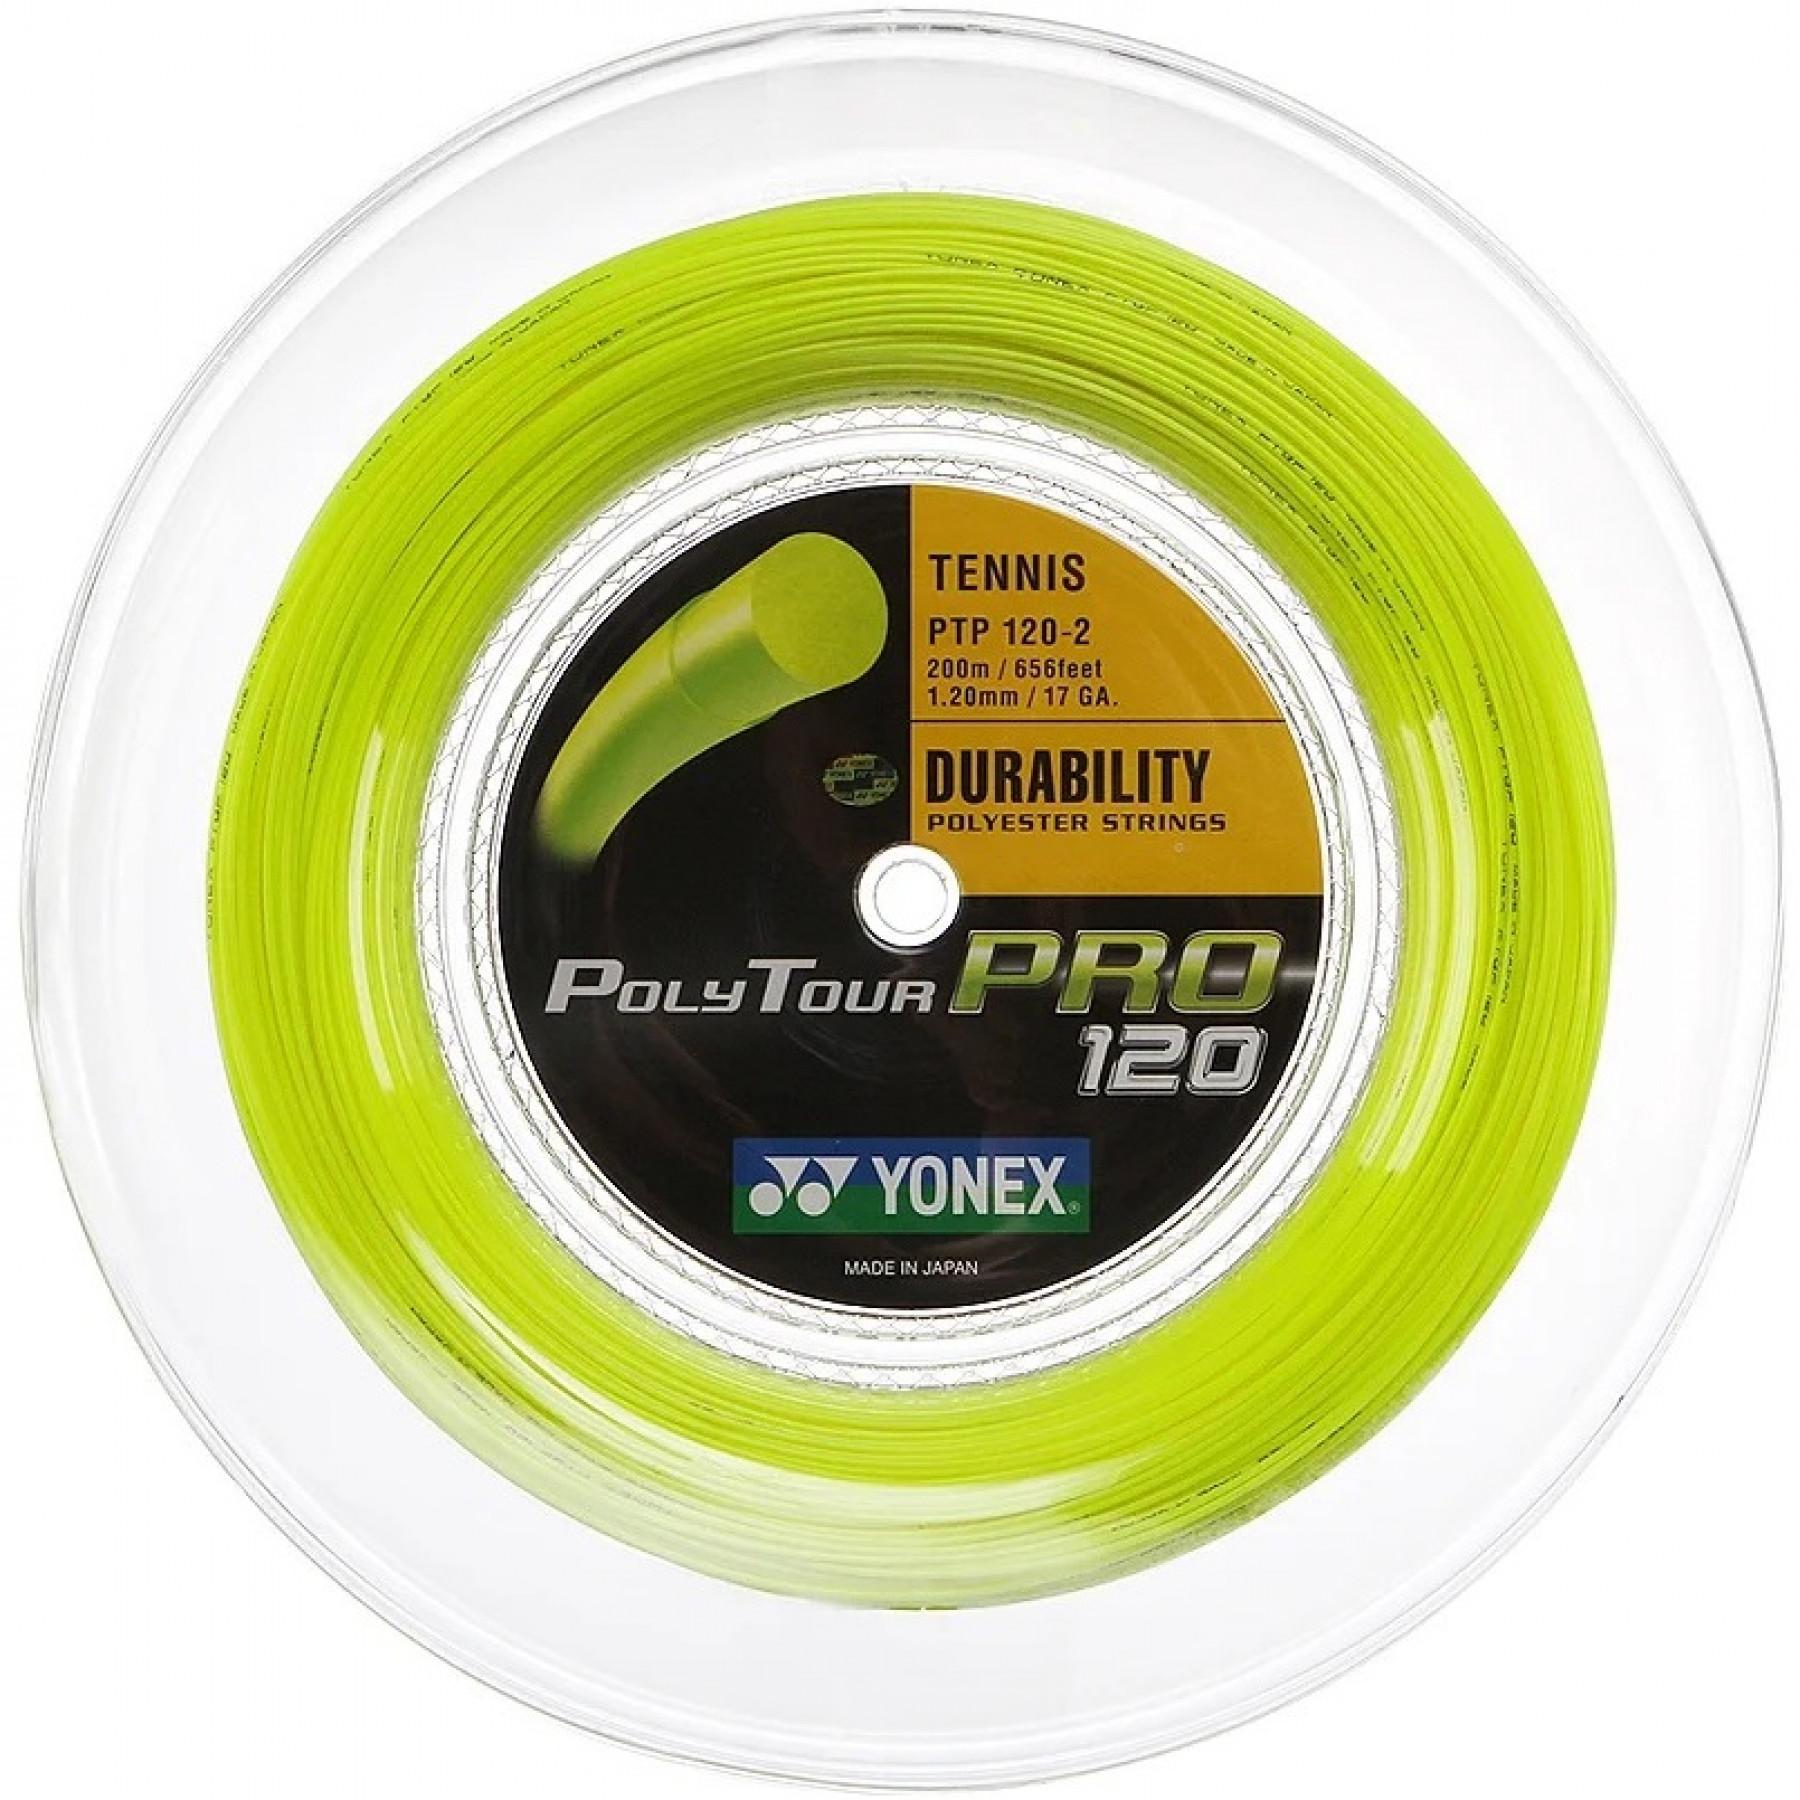 Walze Yonex PolyTour Pro 120